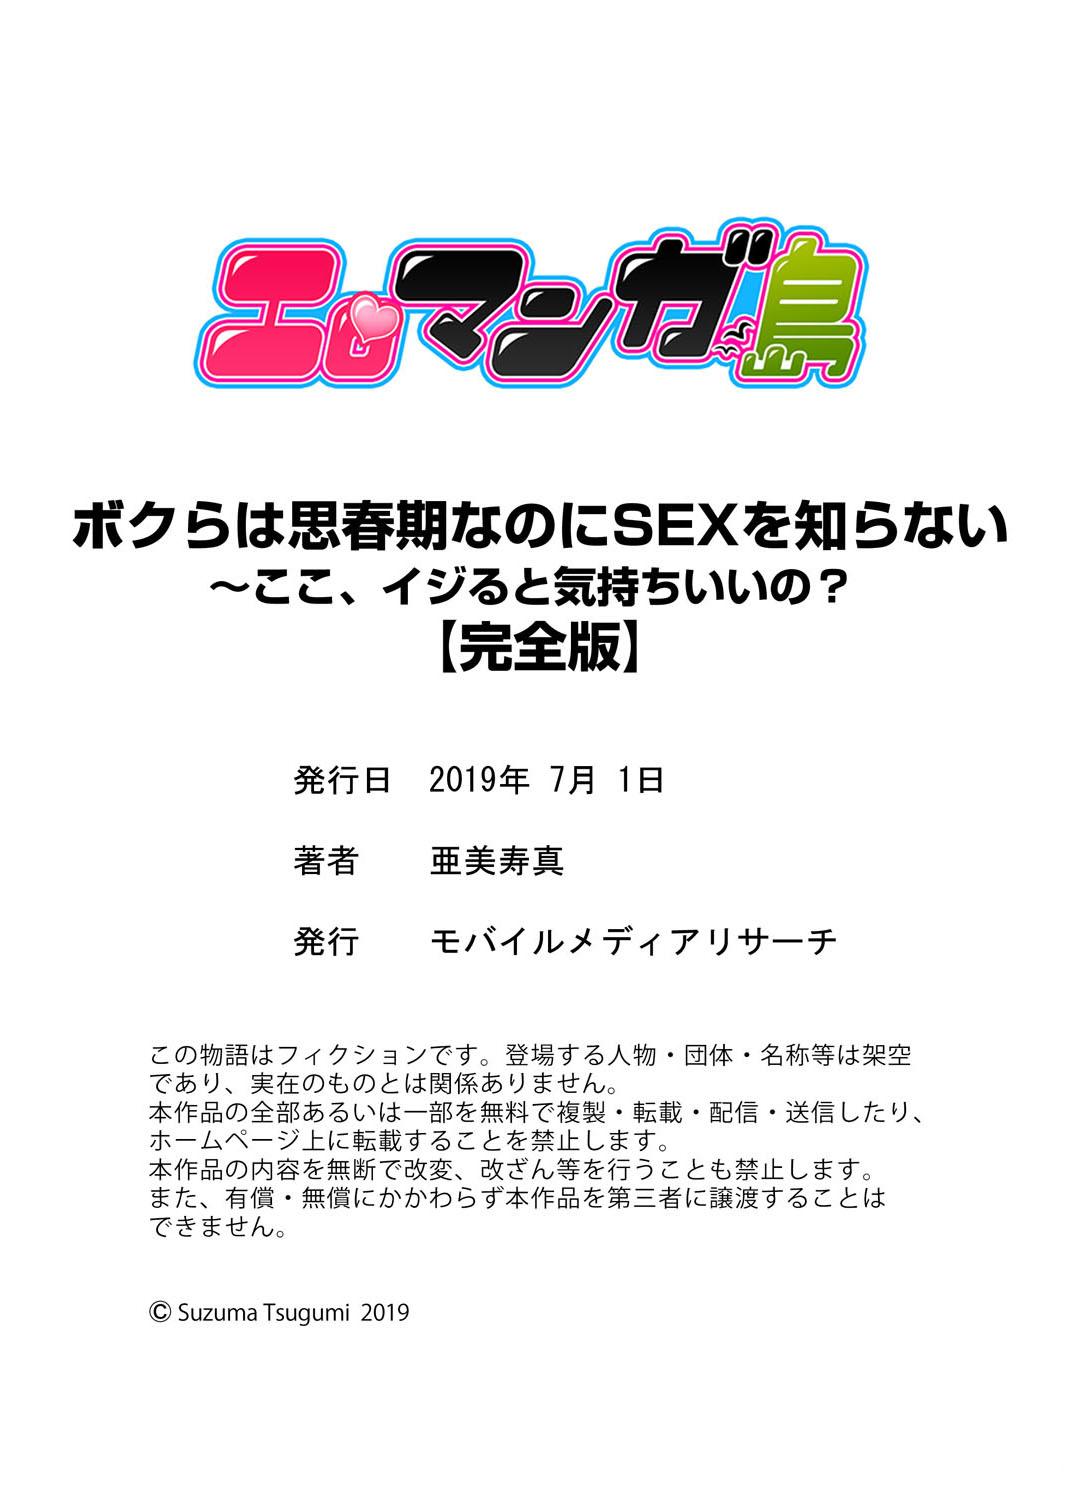 Students Bokura wa Shishunki nanoni SEX o Shiranai ~ Koko, Ijiru to Kimochii iino? Tit - Page 126